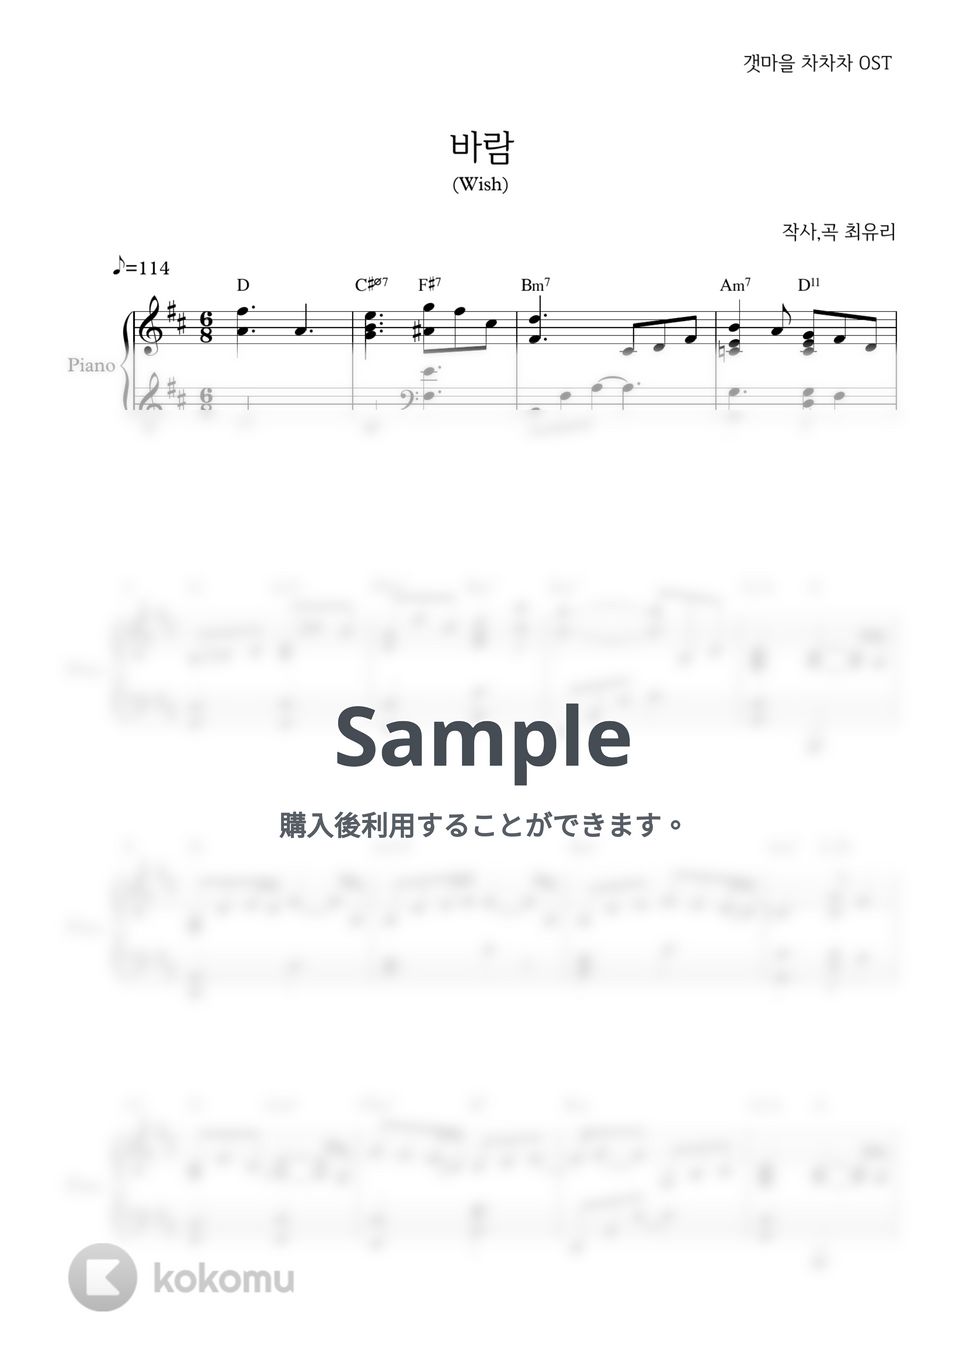 海街チャチャチャ - 願い (Wish) (Easy ver.) by PIANOiNU